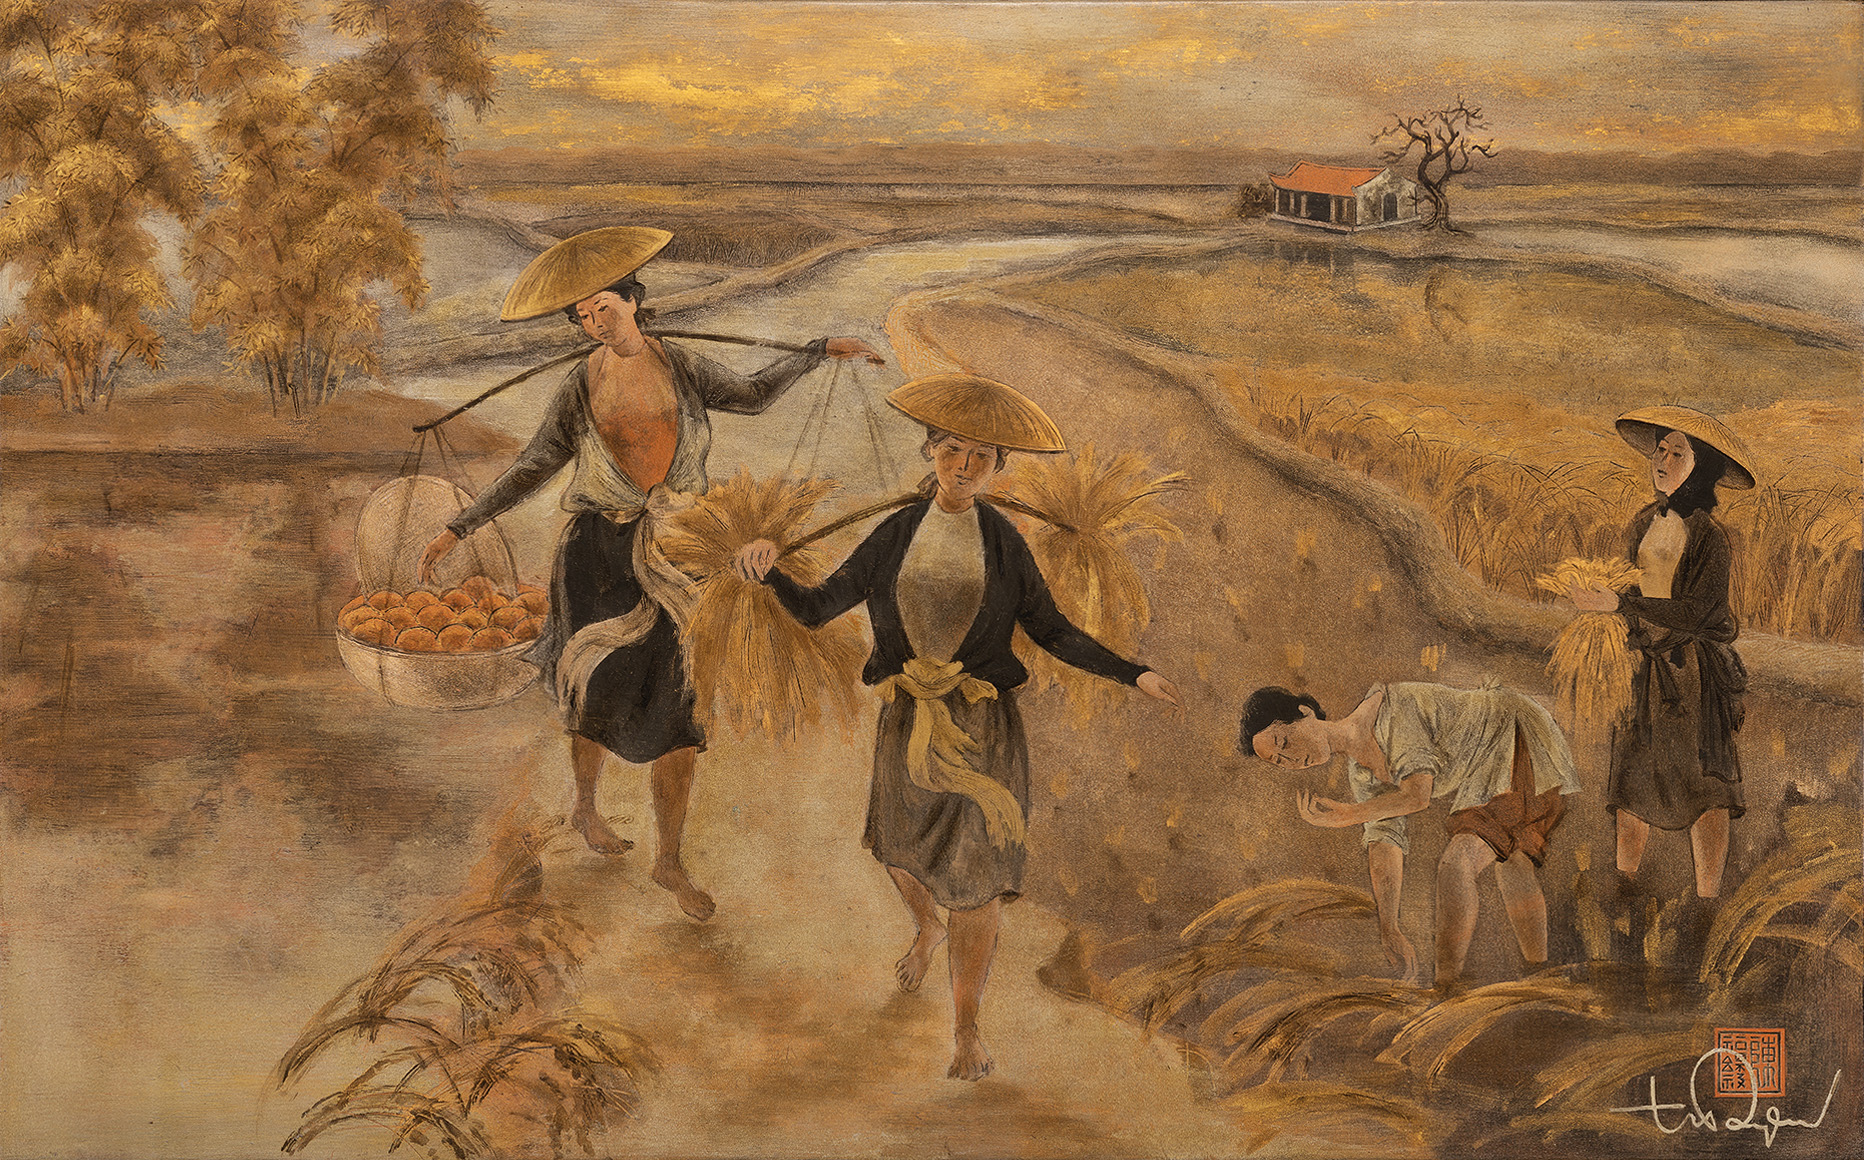 Tranh Mùa gặt được hoạ sĩ Trần Phúc Duyên sáng tác năm 1965